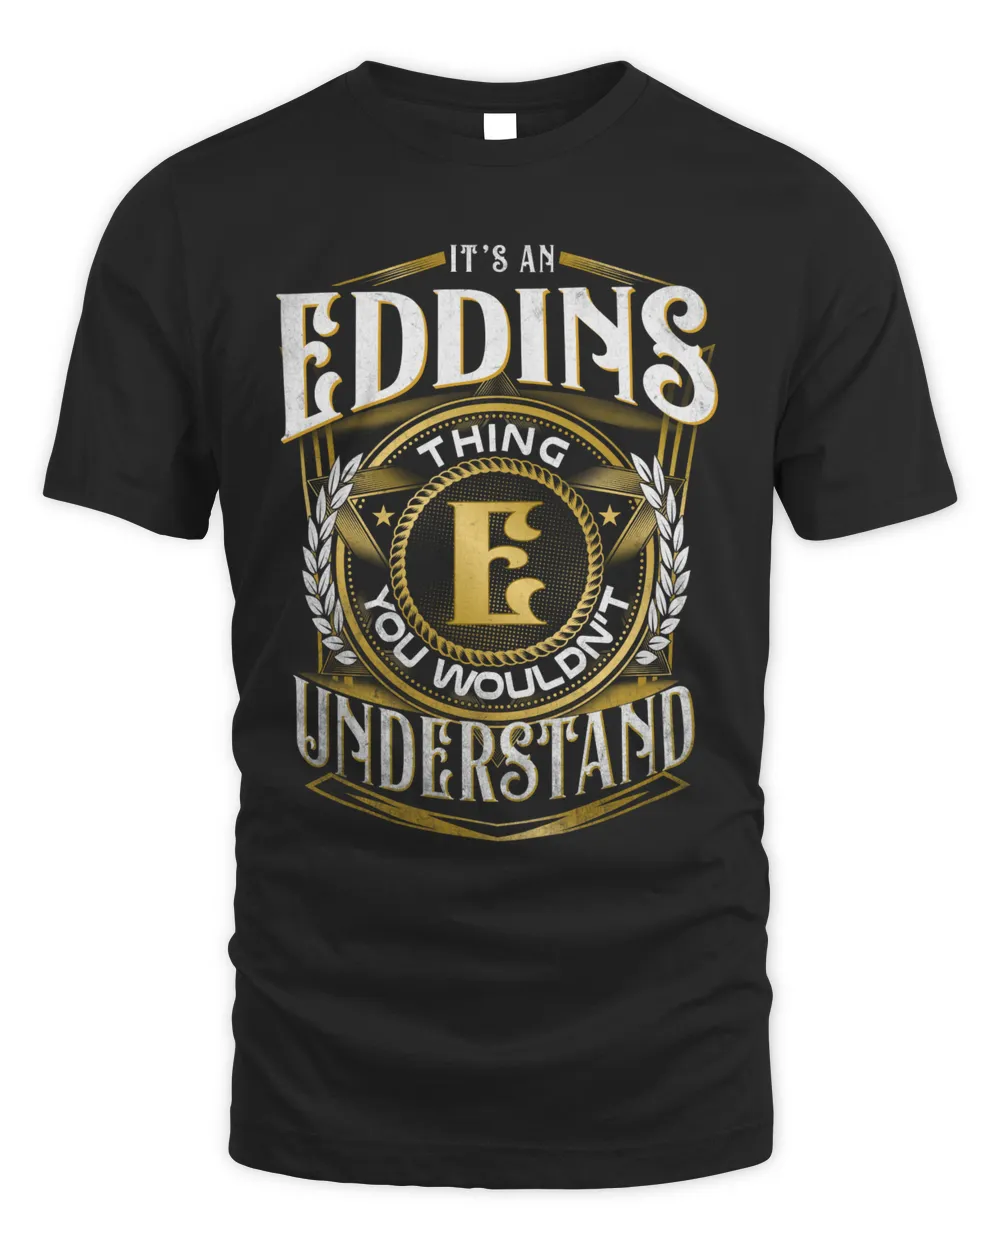 EDDINS-NT-01